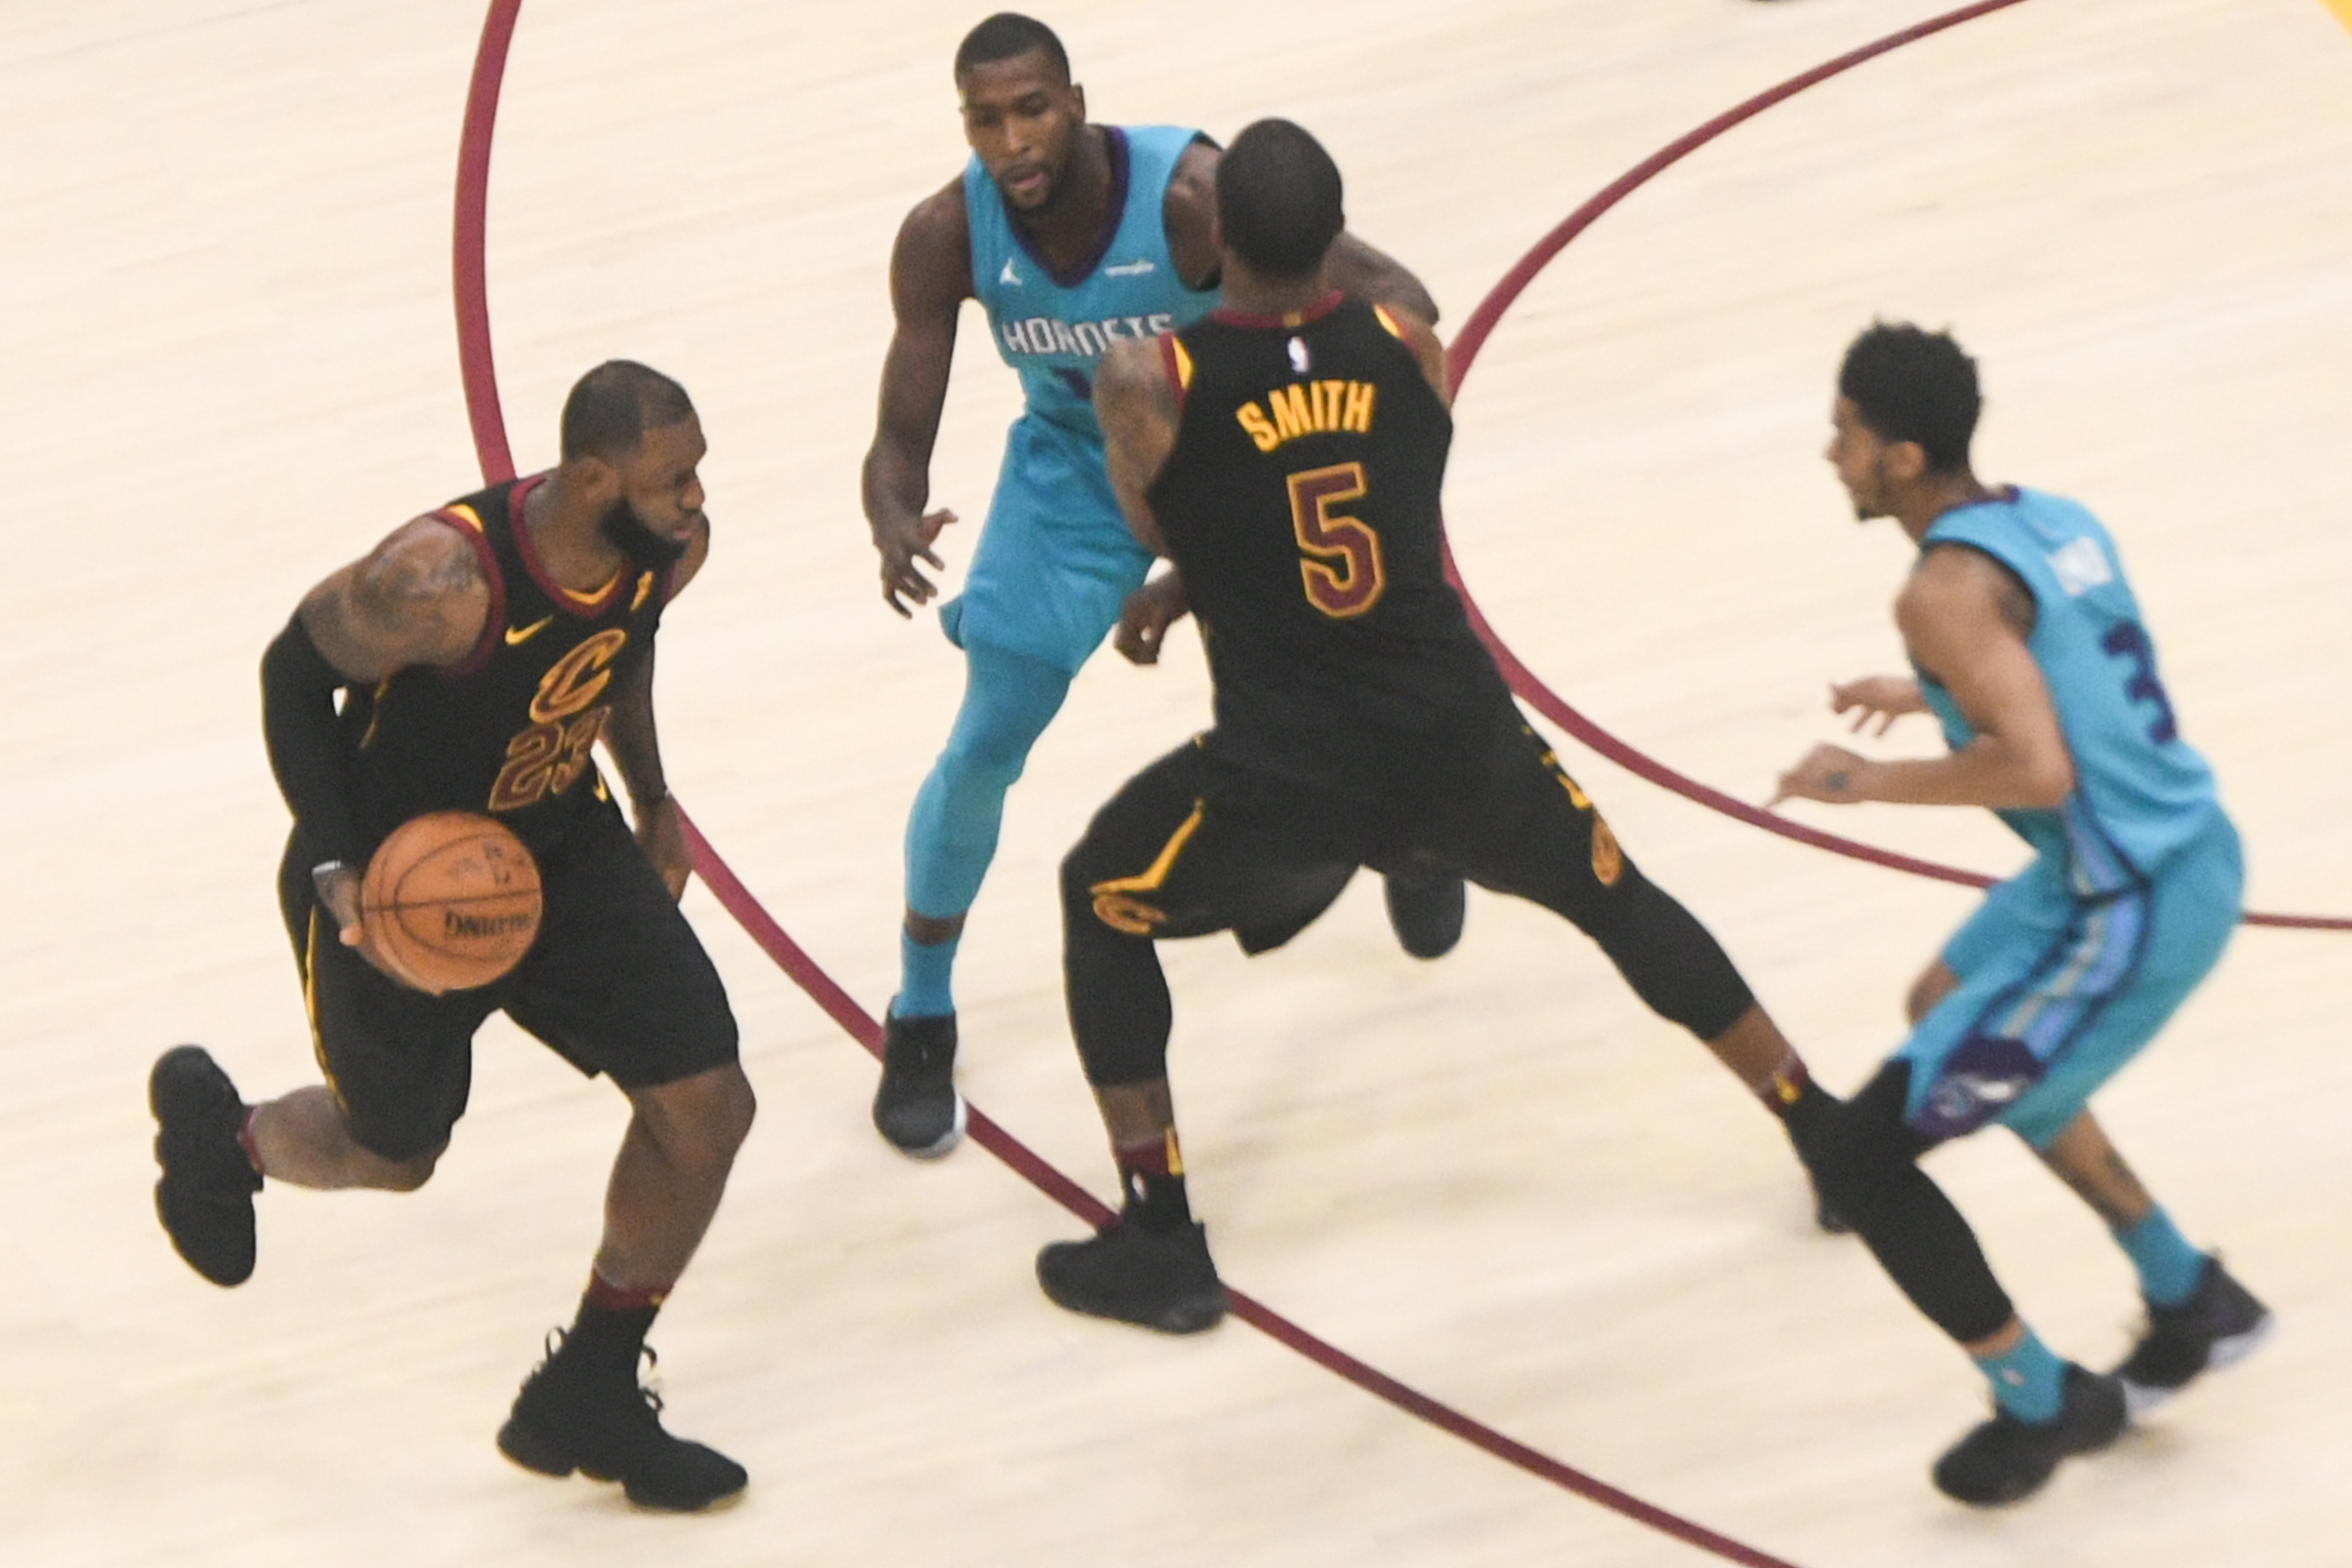 Uma fotografia mostra LeBron James driblando uma bola de basquete durante um jogo de basquete